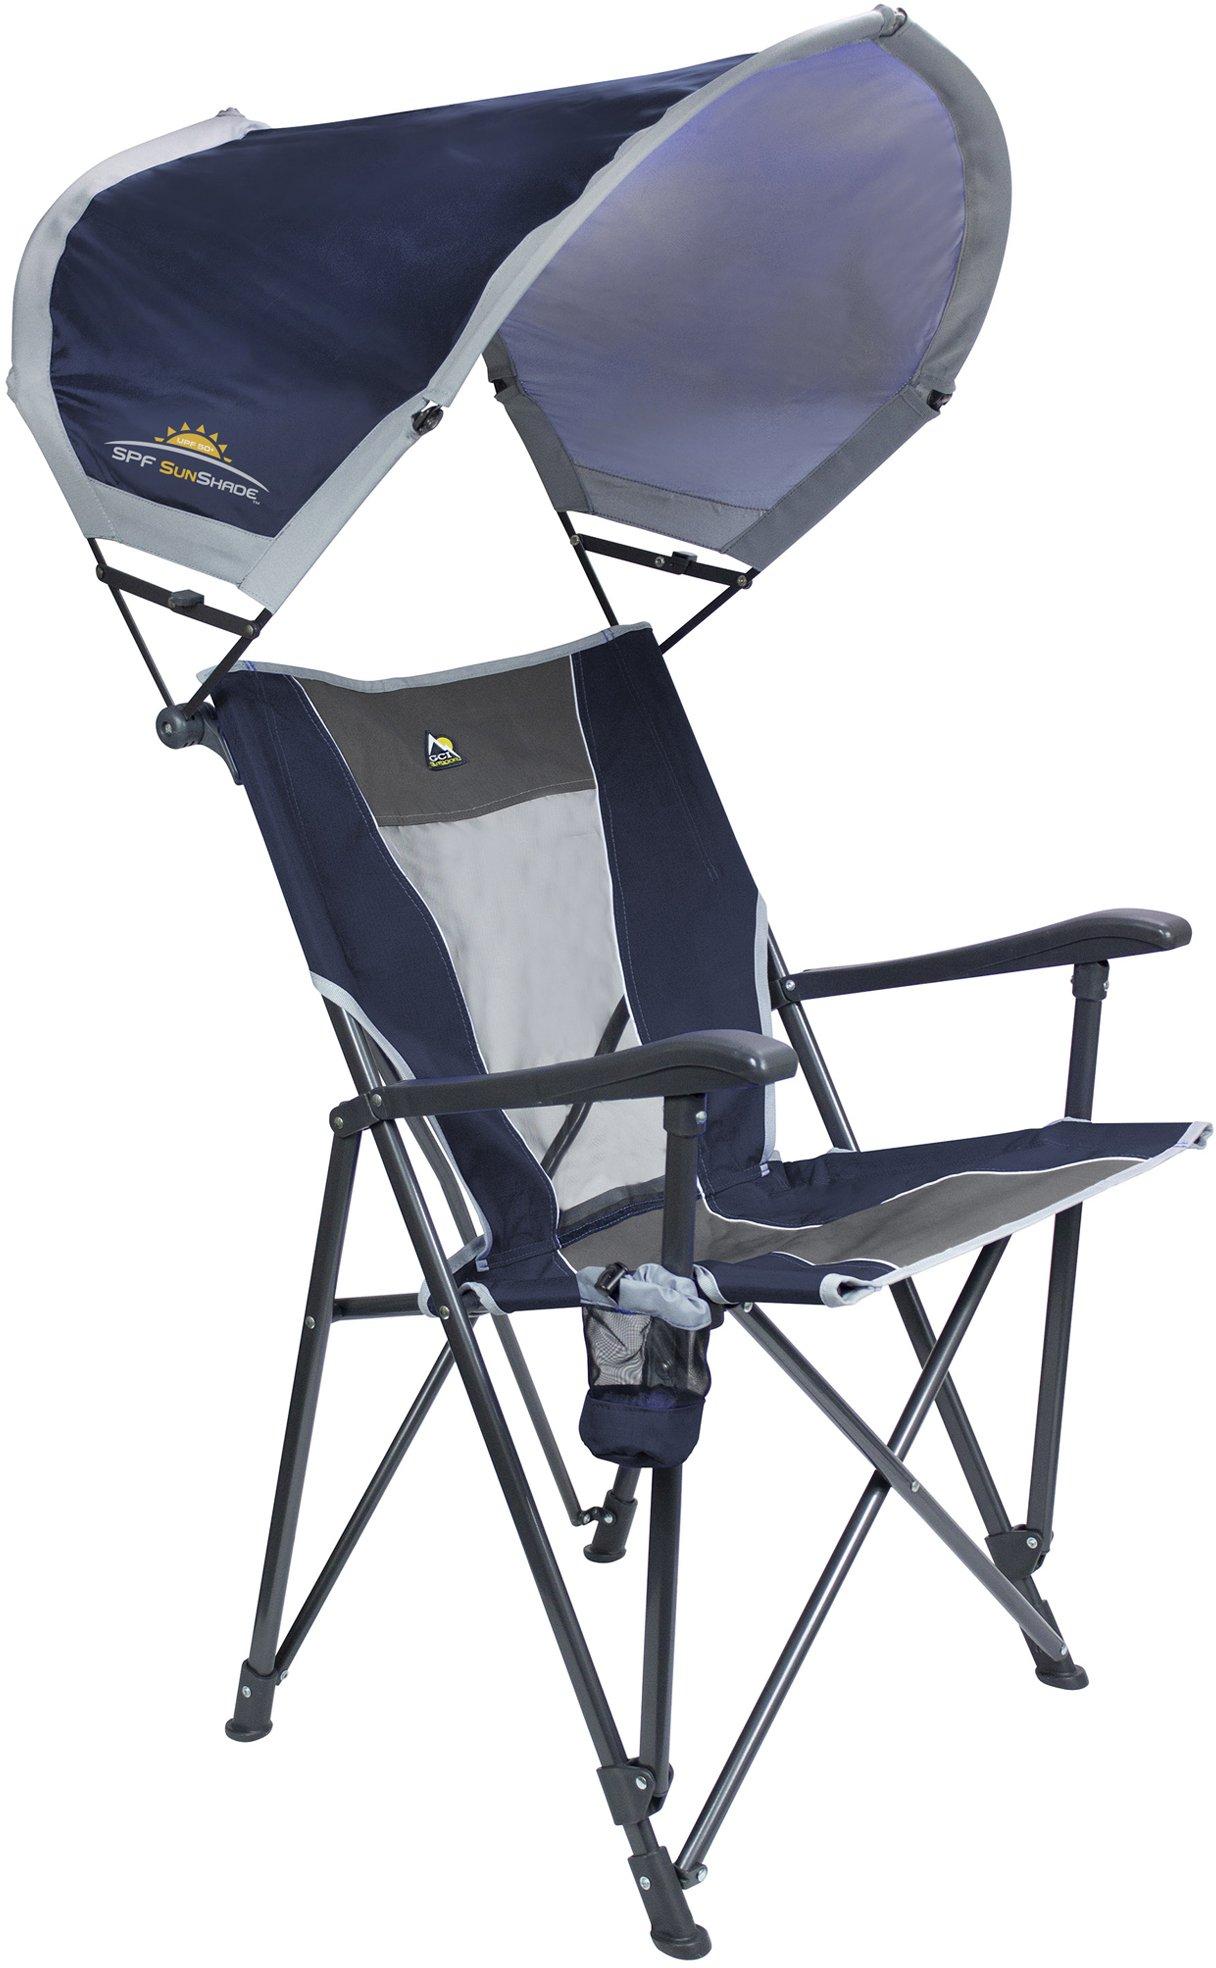 SunShade Eazy Foldable Chair